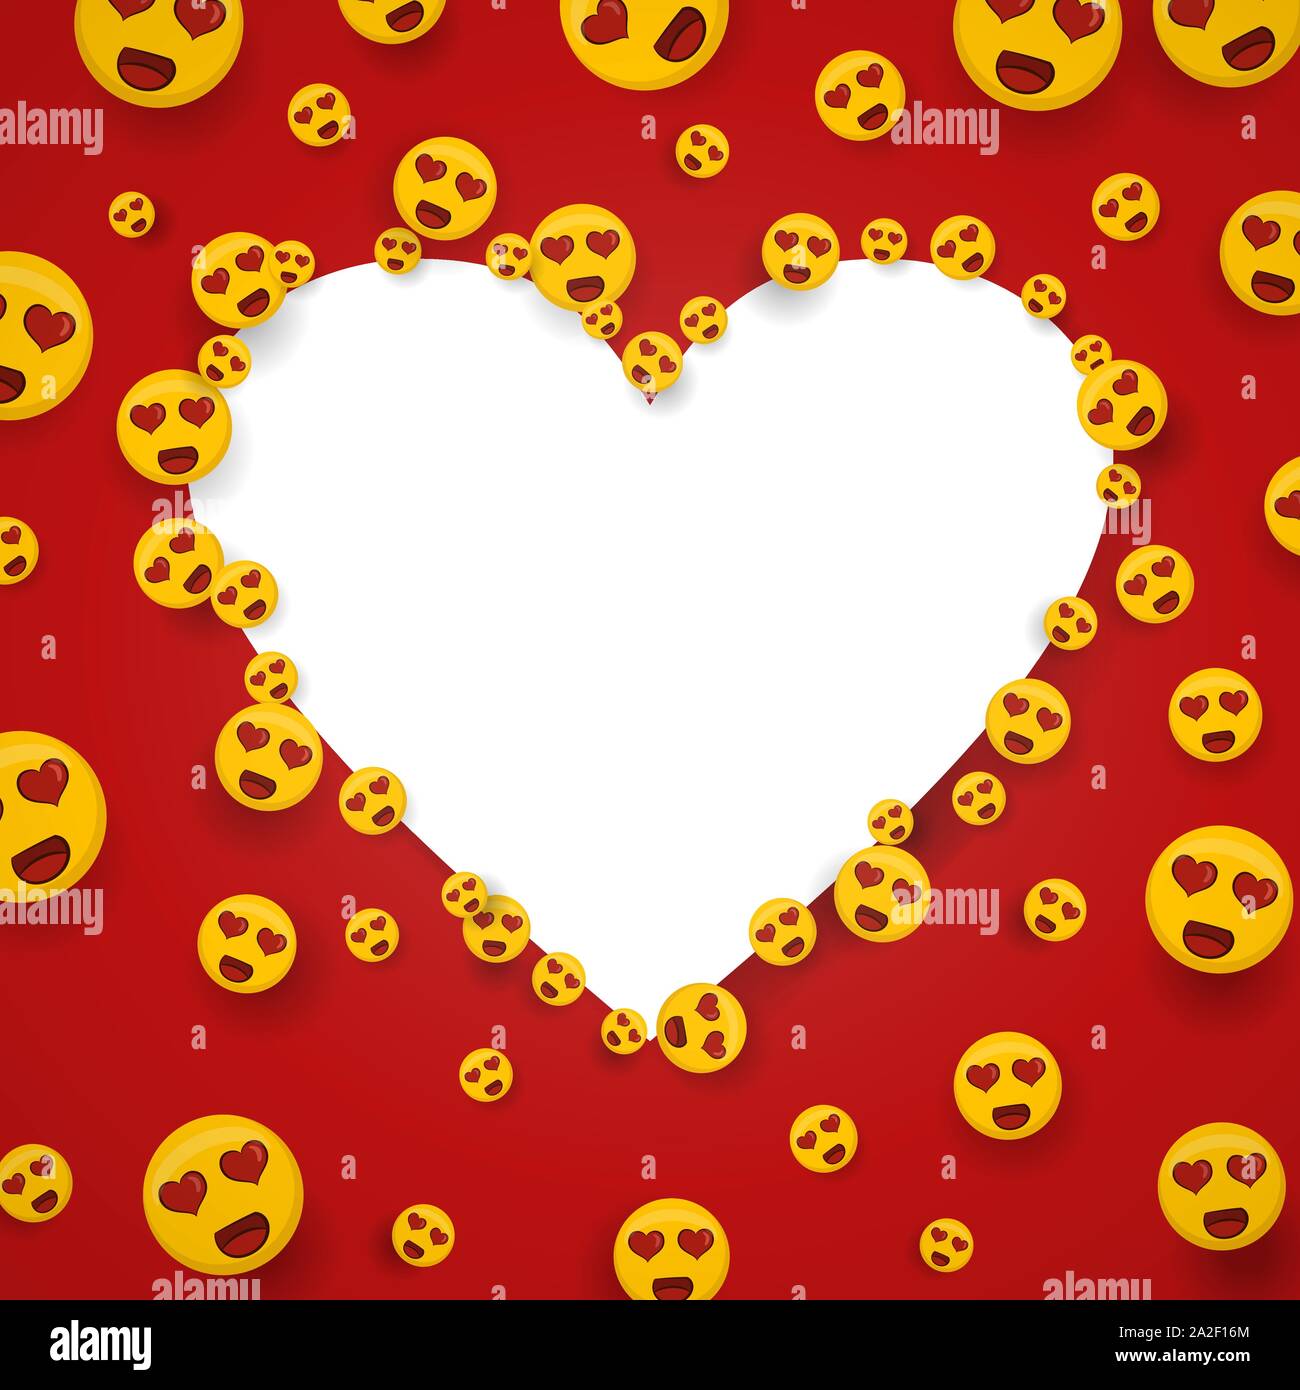 Liebe gelbes Emoticon Symbole auf weiße Kopie space frame Vorlage. Romantische smiley-Gesichter cartoon mit roten Herzen Augen. Stock Vektor